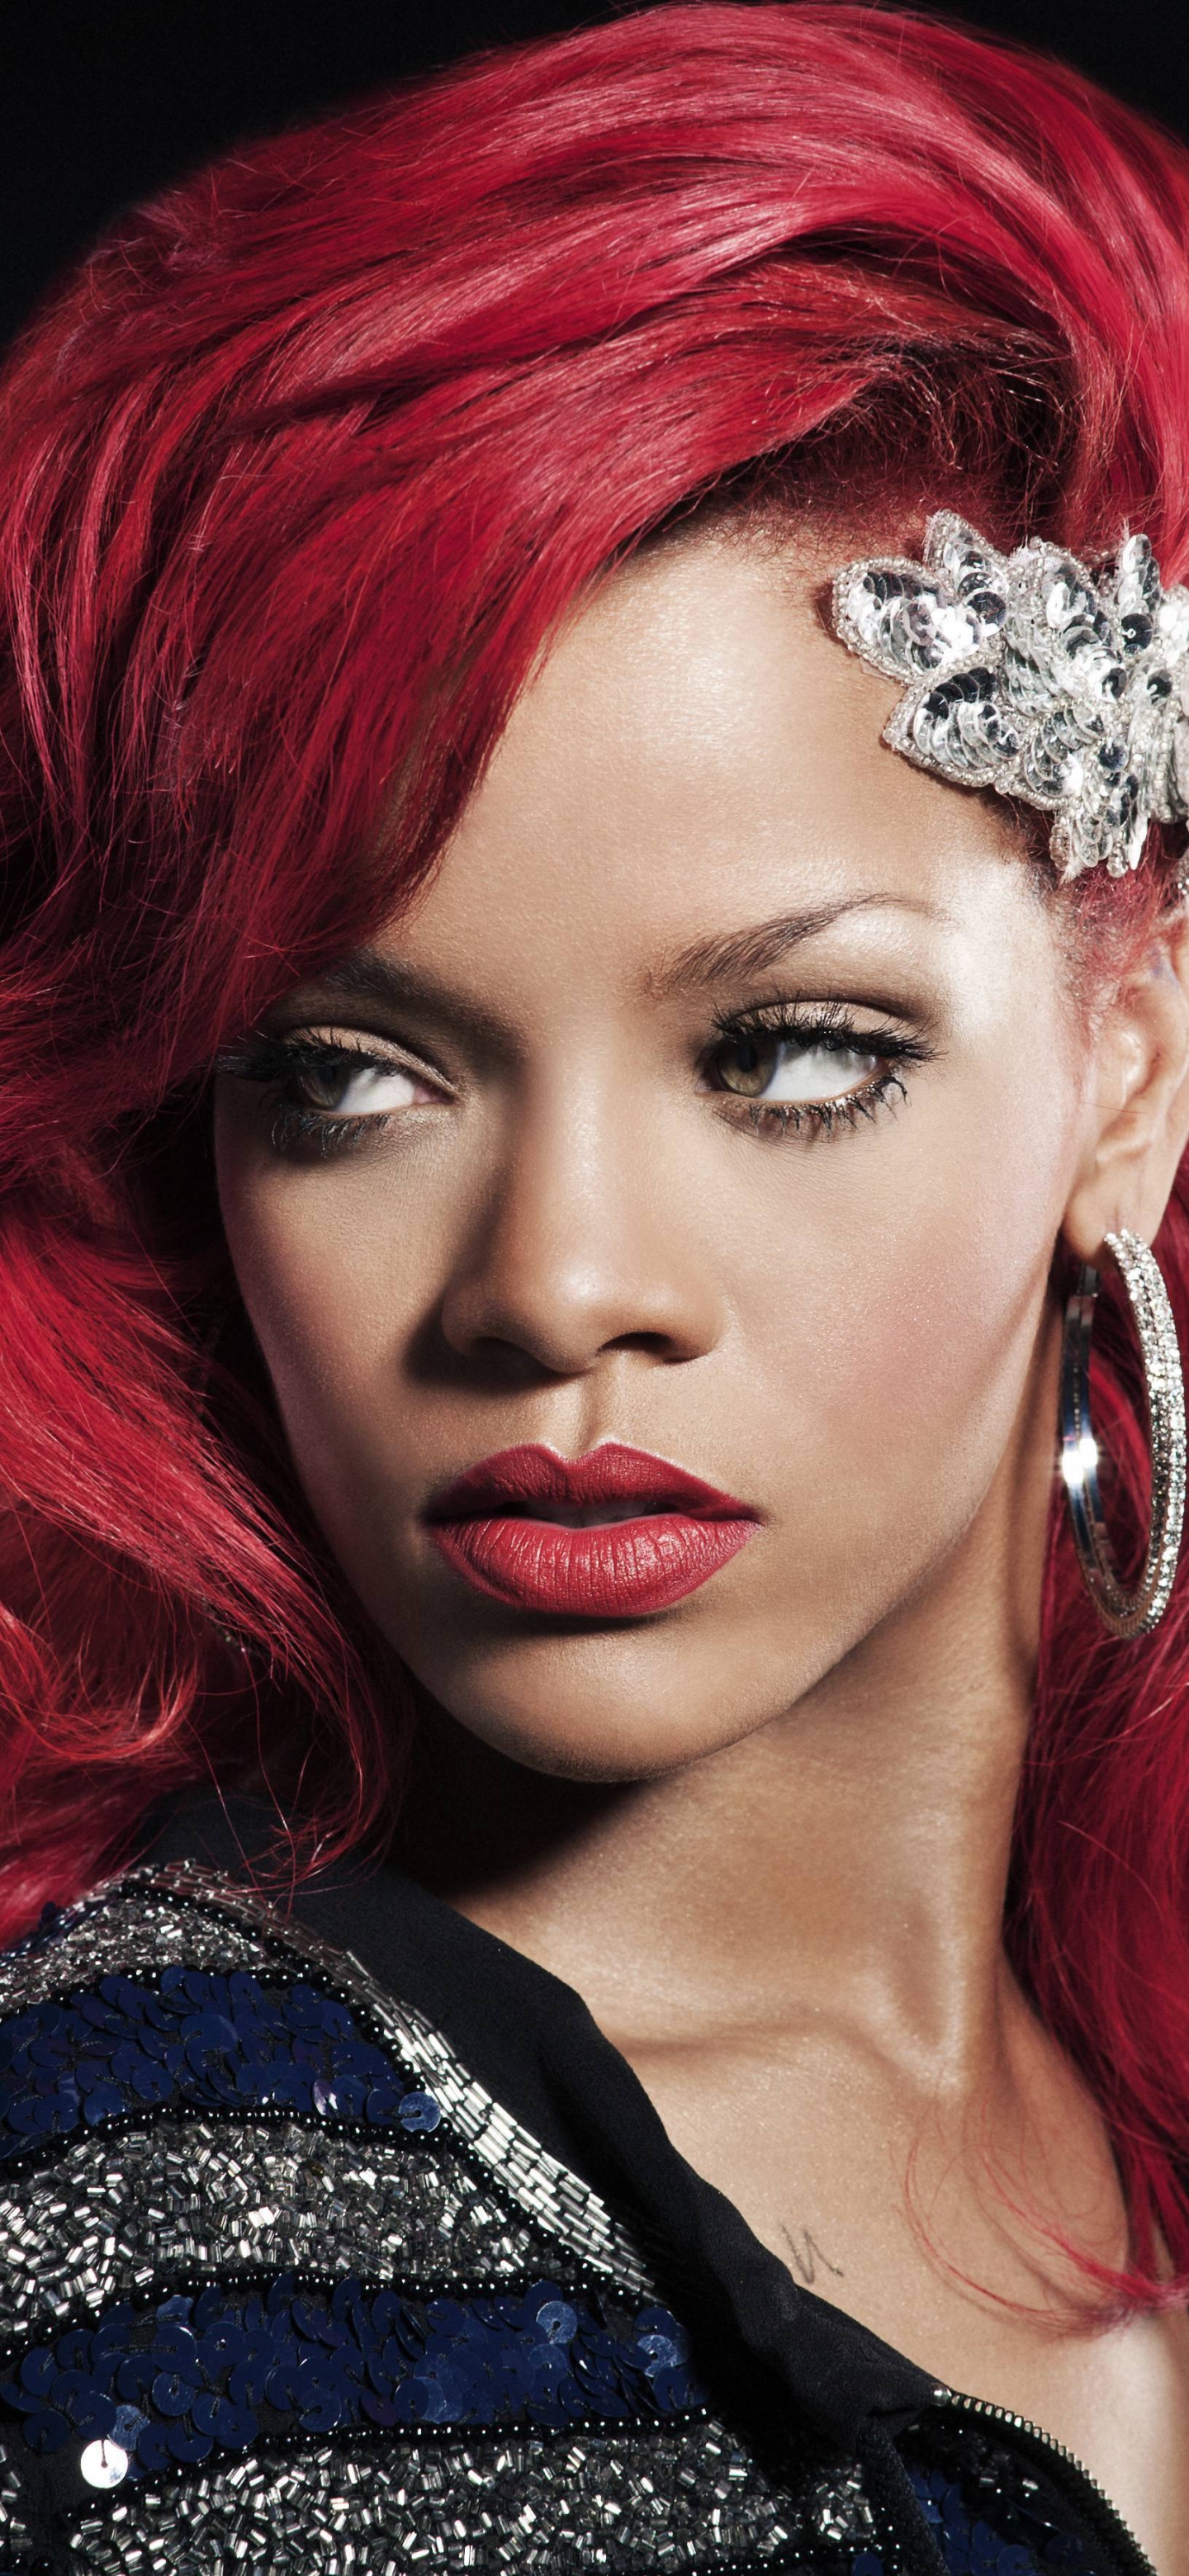 Descarga gratuita de fondo de pantalla para móvil de Música, Rihanna, Cantante, Cara, Aretes, Cabello Rojo, Lápiz Labial, Barbadense.